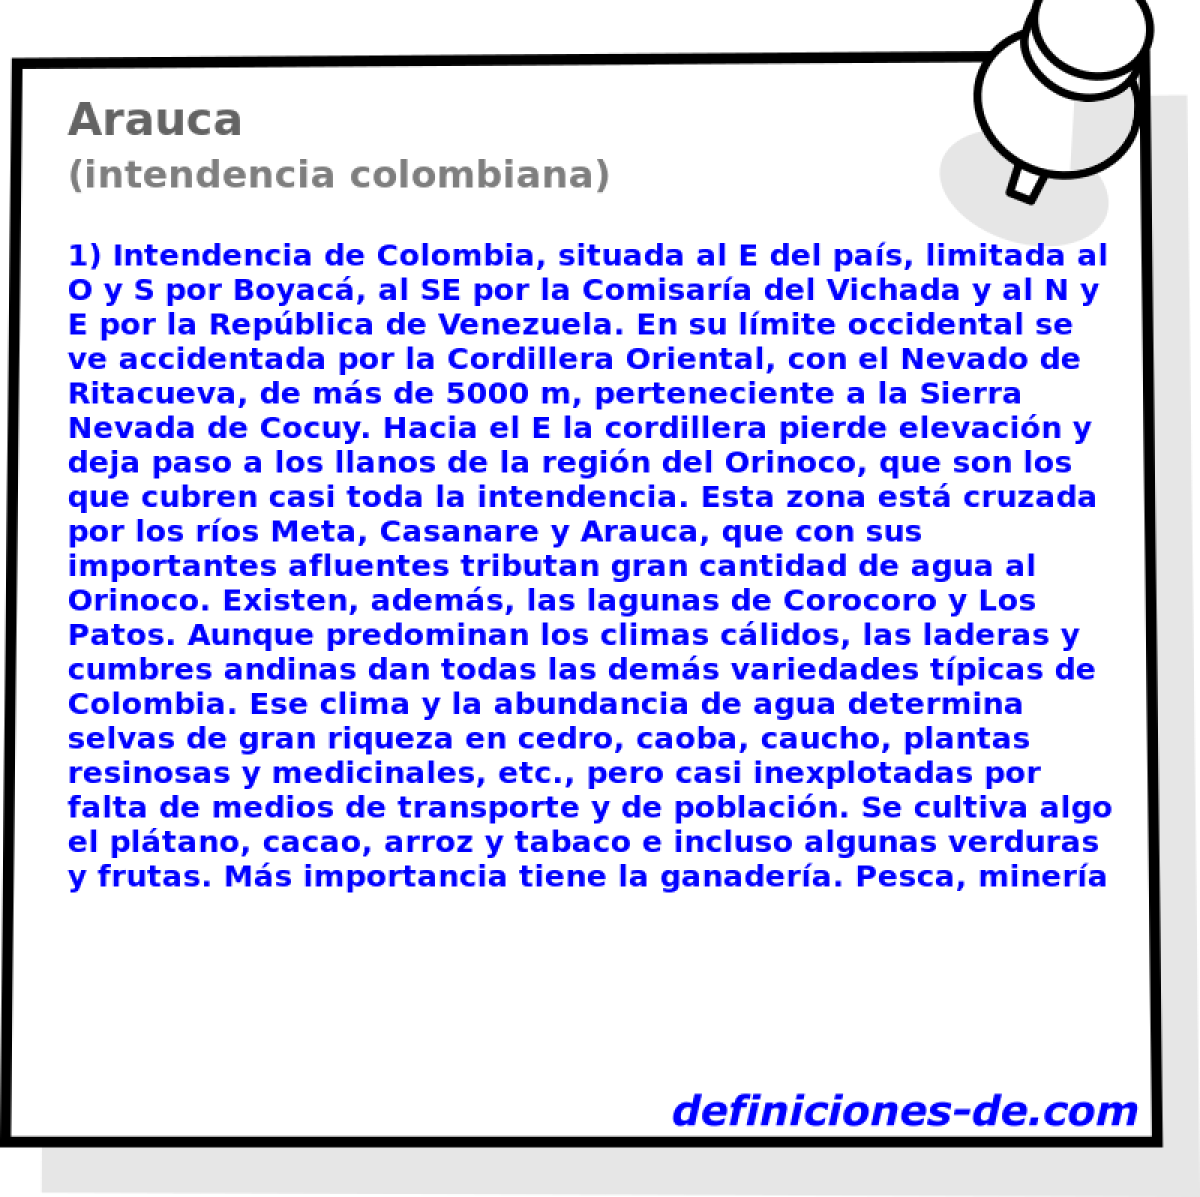 Arauca (intendencia colombiana)